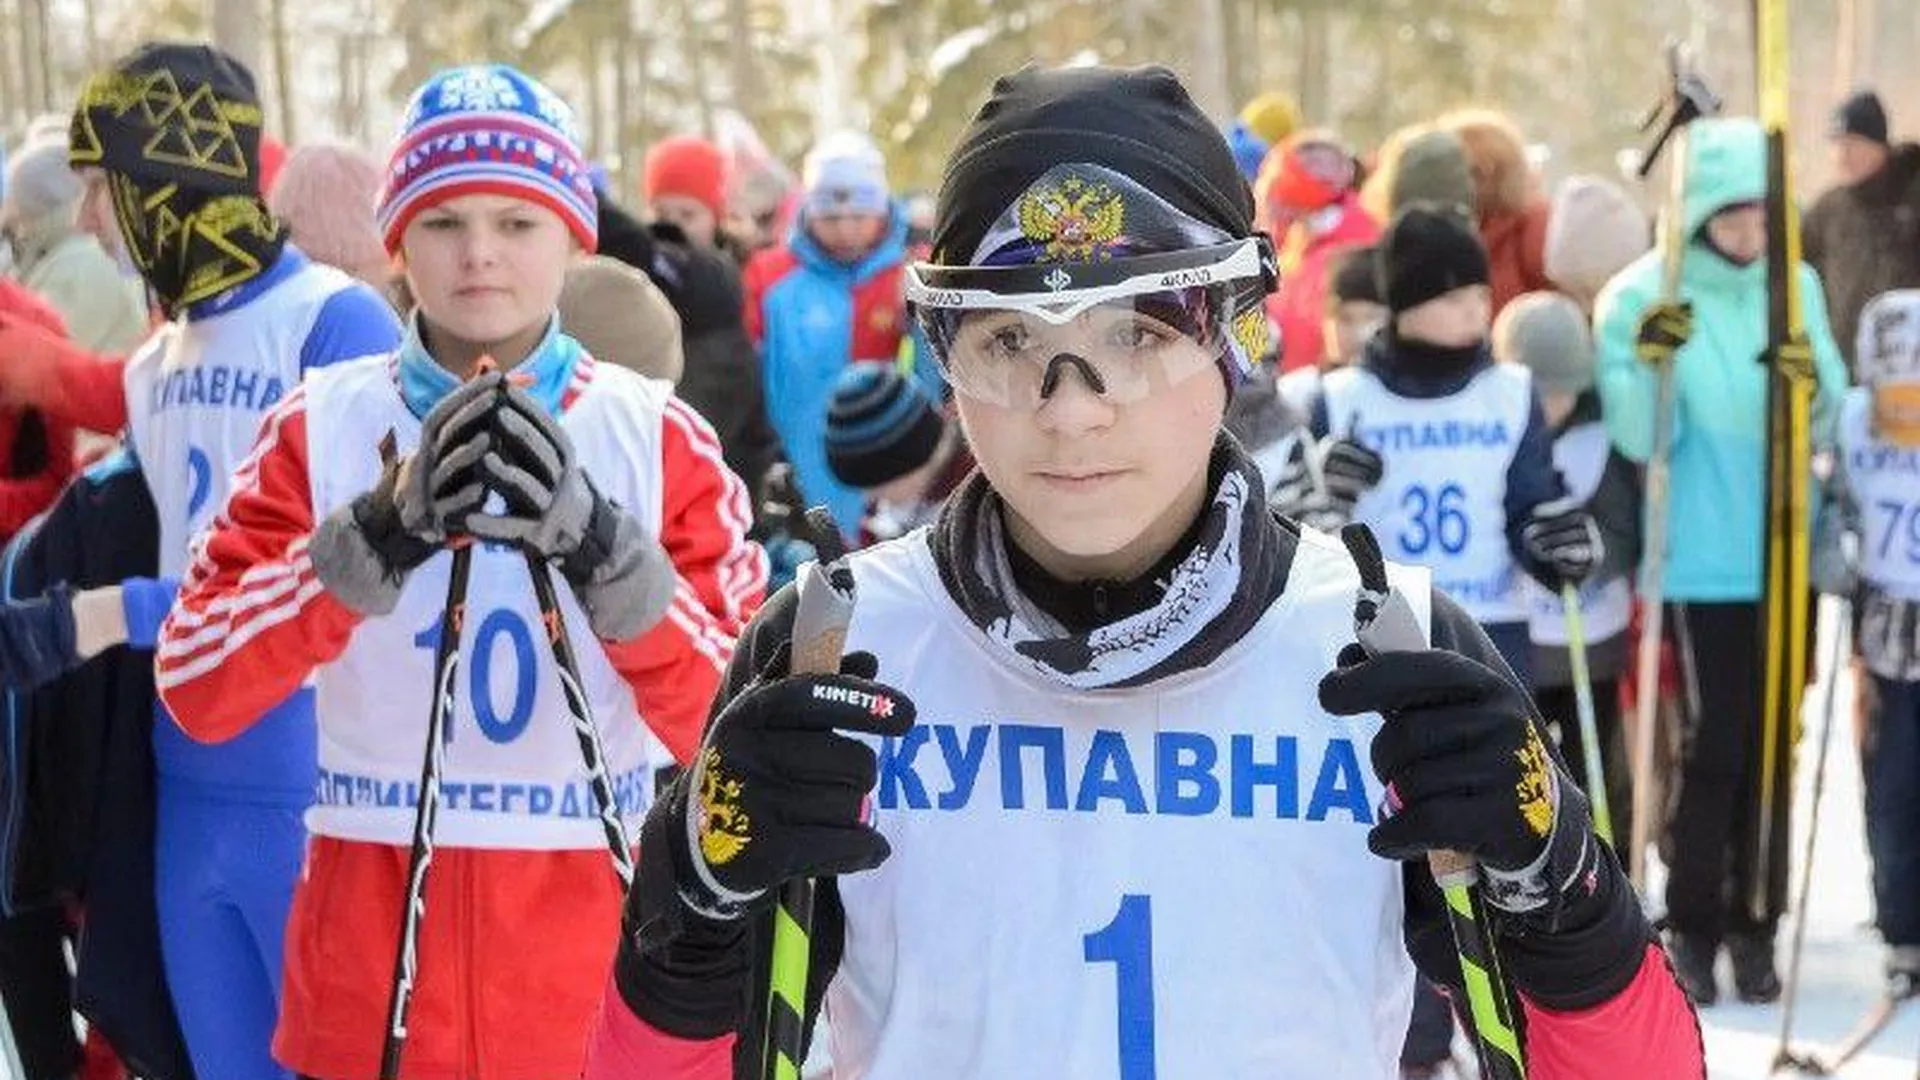 Лыжный забег состоялся в Пестовском парке в Балашихе